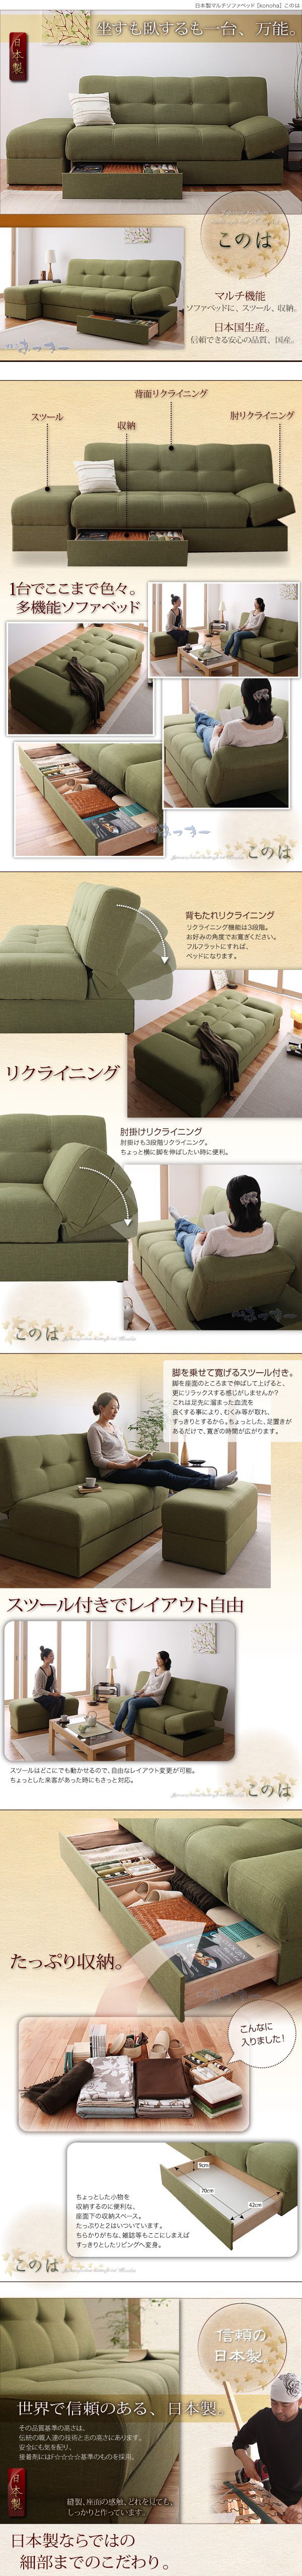 最新品国産■konoha/モスグリーン 日本製マルチソファベッド 多機能 ソファベッド 国産 布製